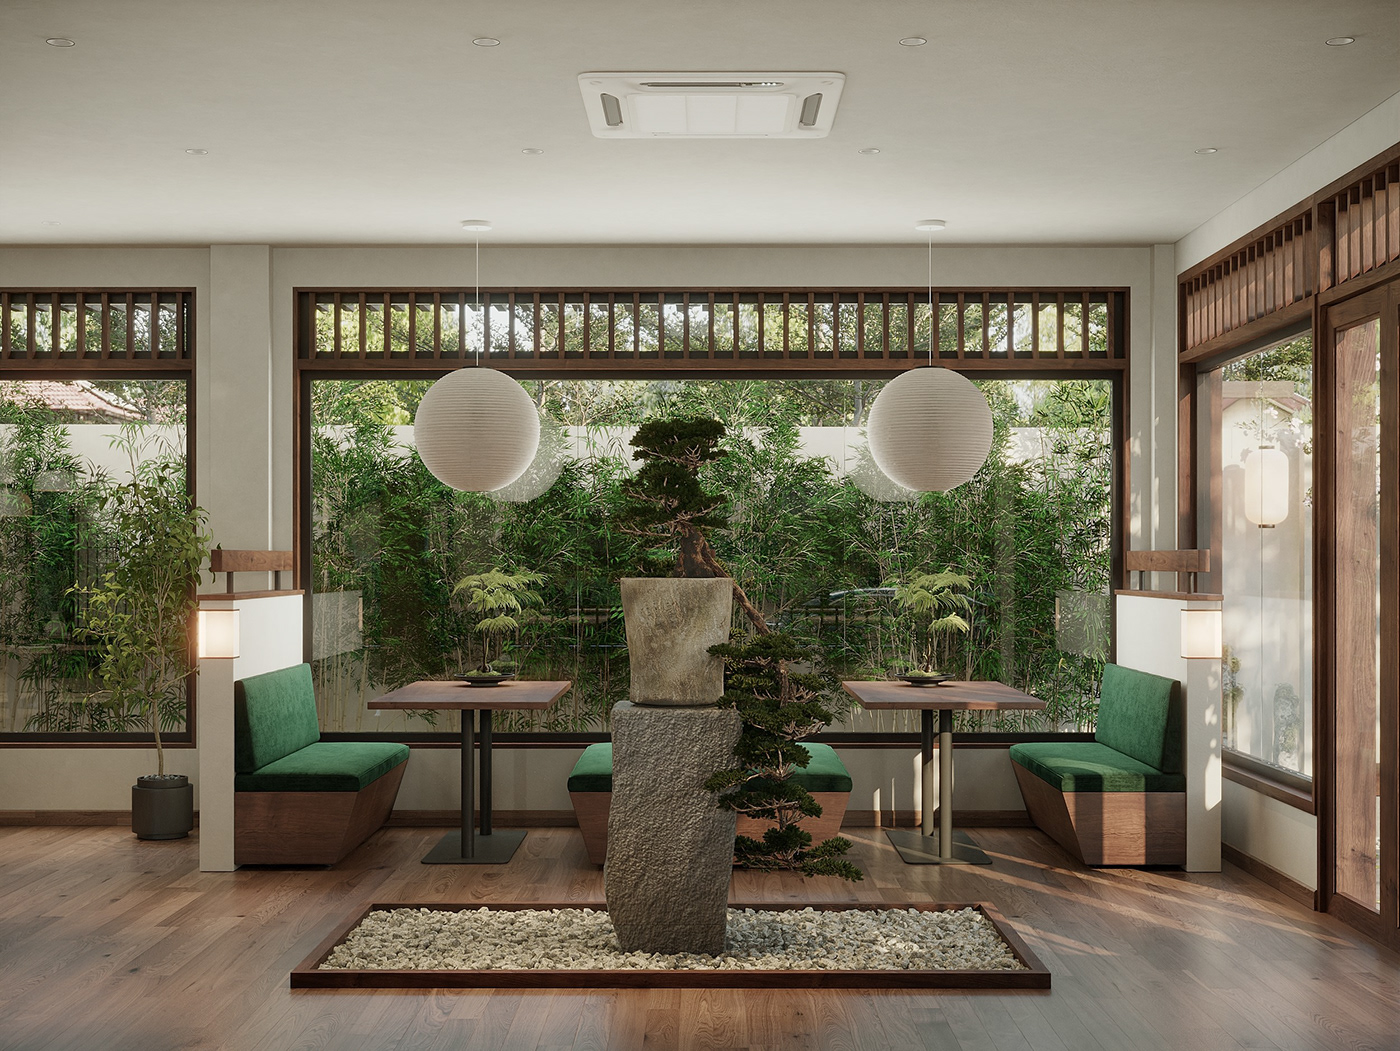 vegan interior design  restaurant Food  exterior 3ds max concept art corona render  photoshop zen